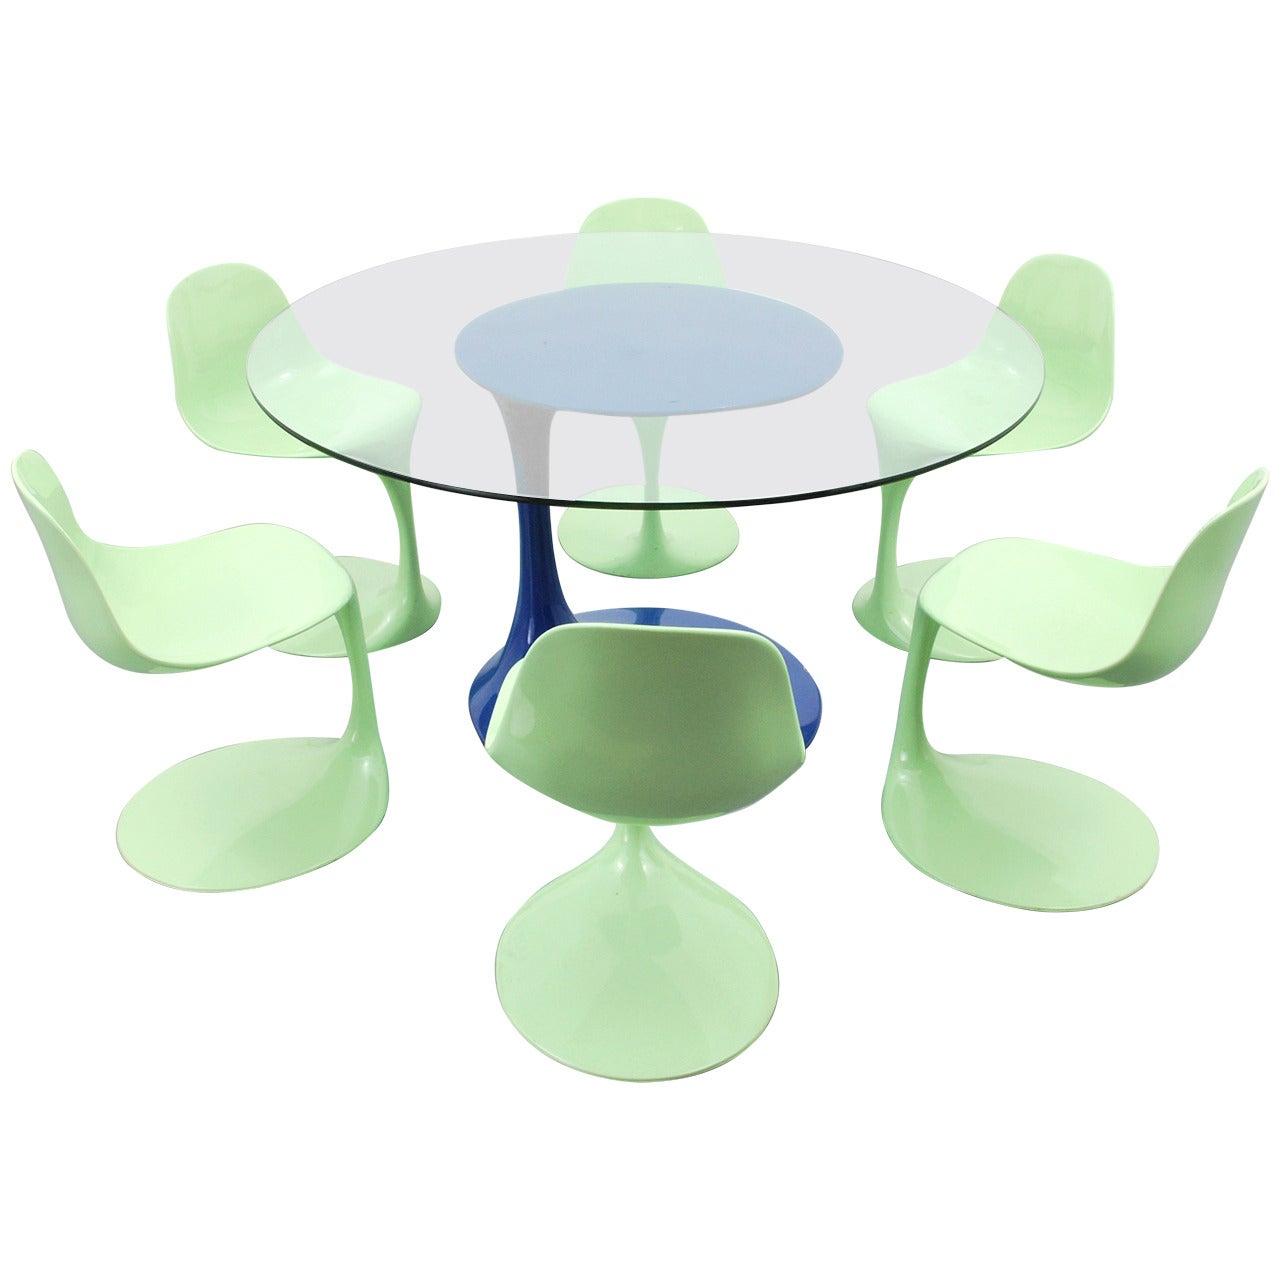 Rudi Bonzanini Dining Table and Six Chairs, circa 1965